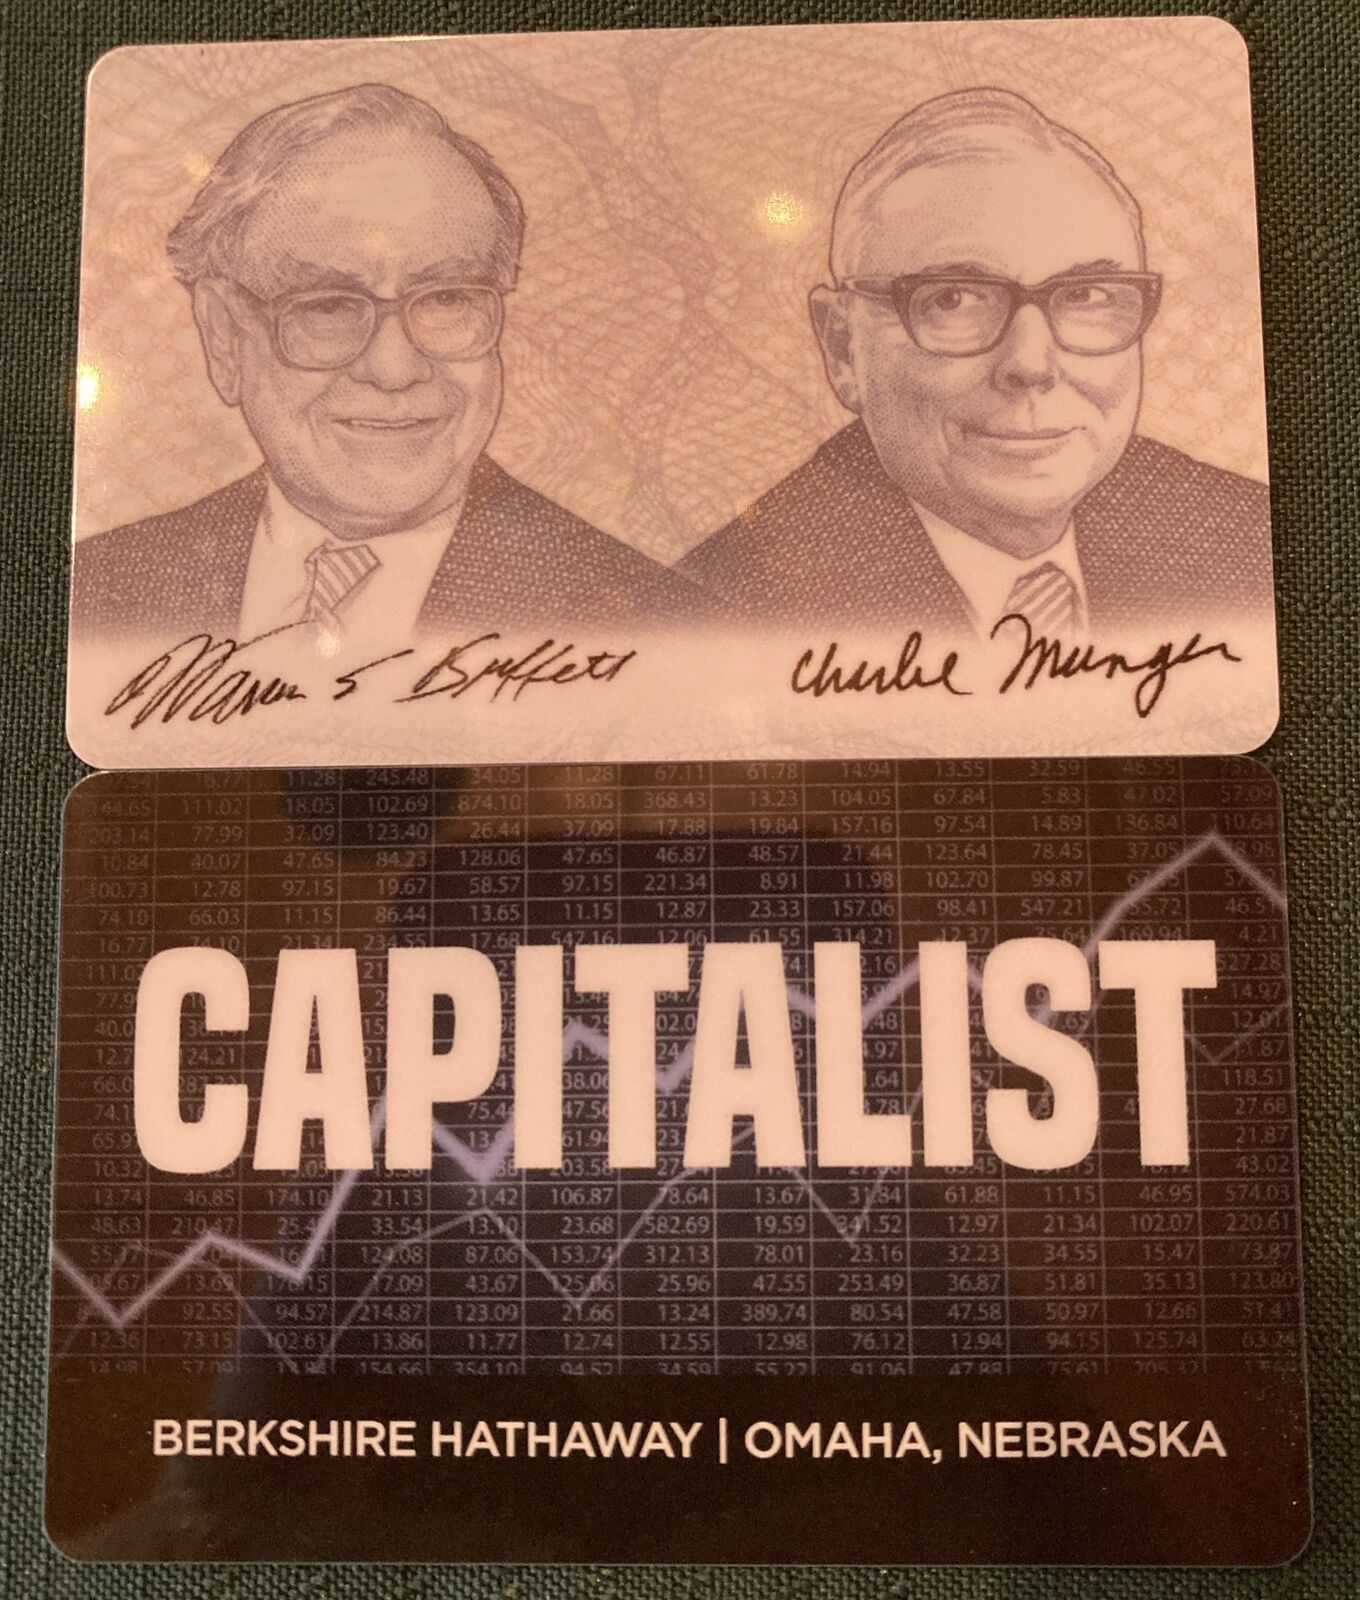 Berkshire Hathaway Warren Buffett Charlie Munger Capitalist Wallet Card 2-Sided